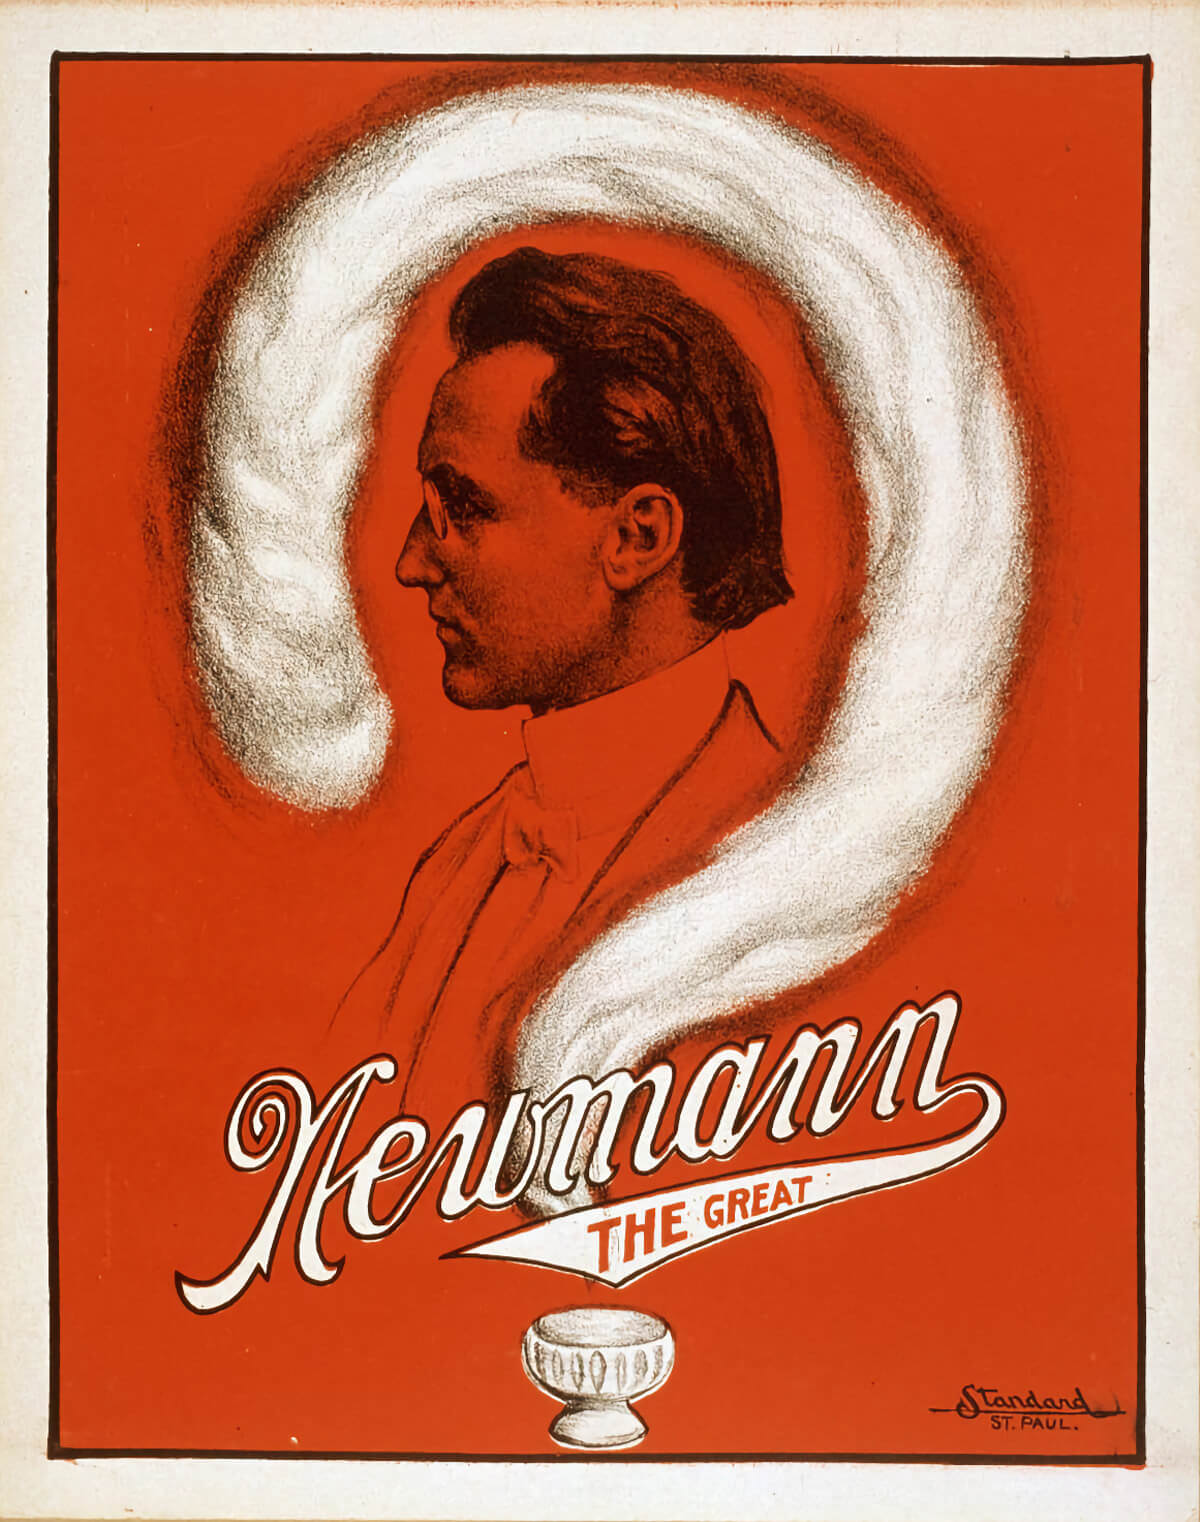 Newmann the Great (C .A. George Newmann) , Magic Poster.